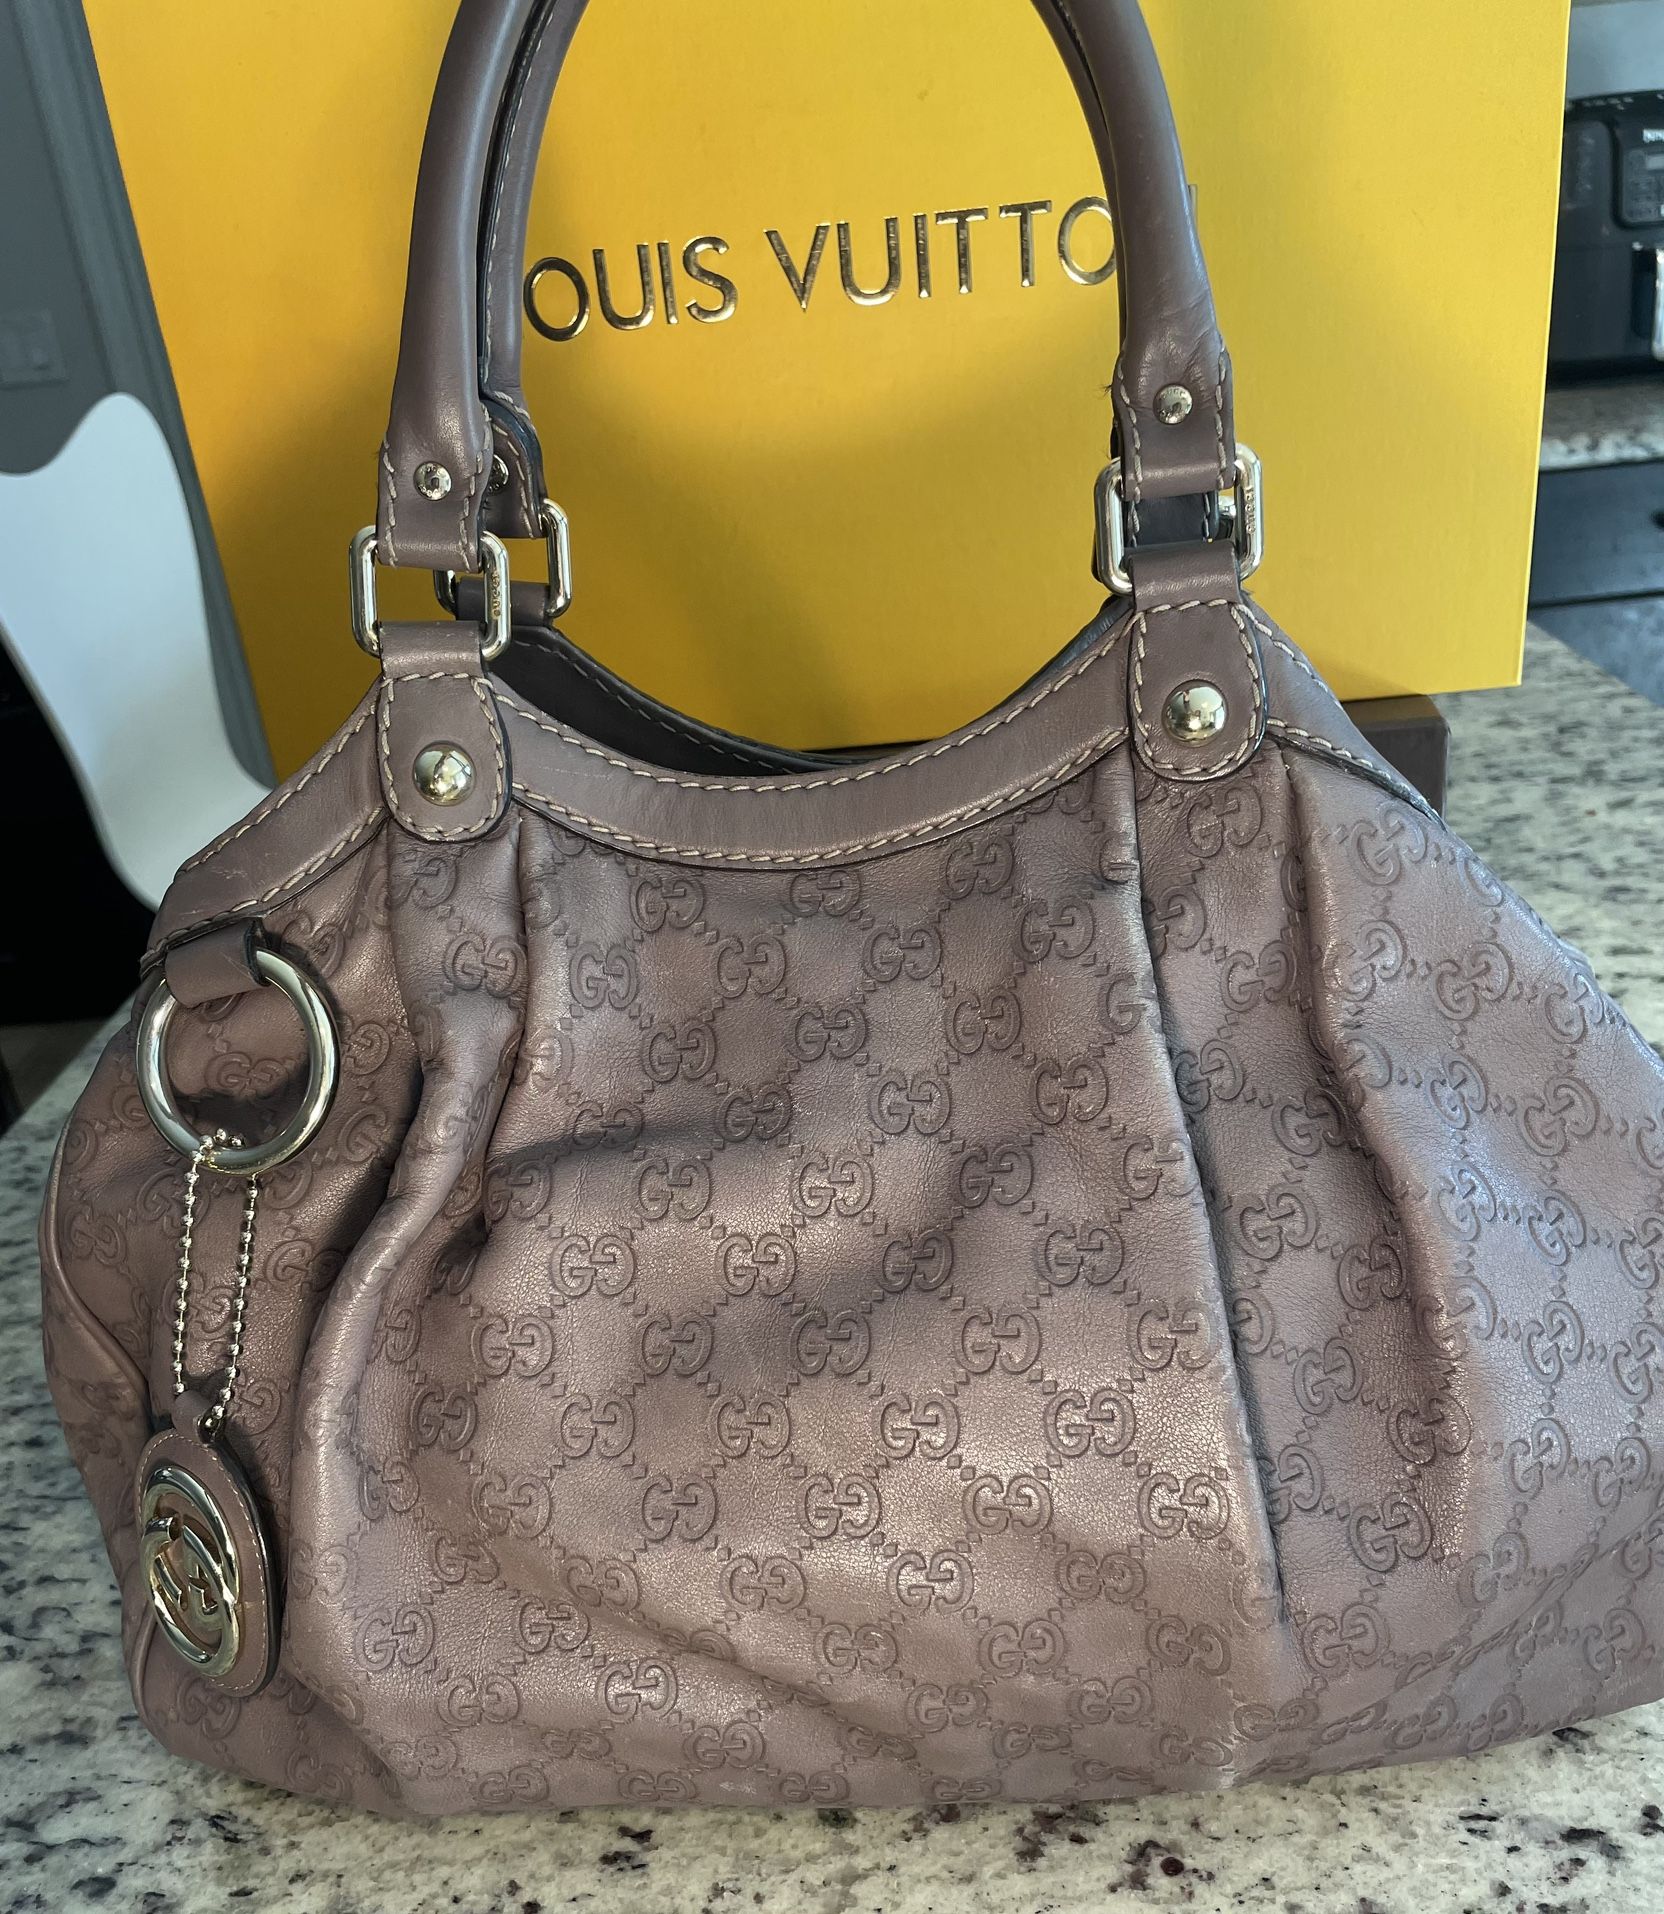 Authentic Gucci Guccissima Leather Sukey Handbag